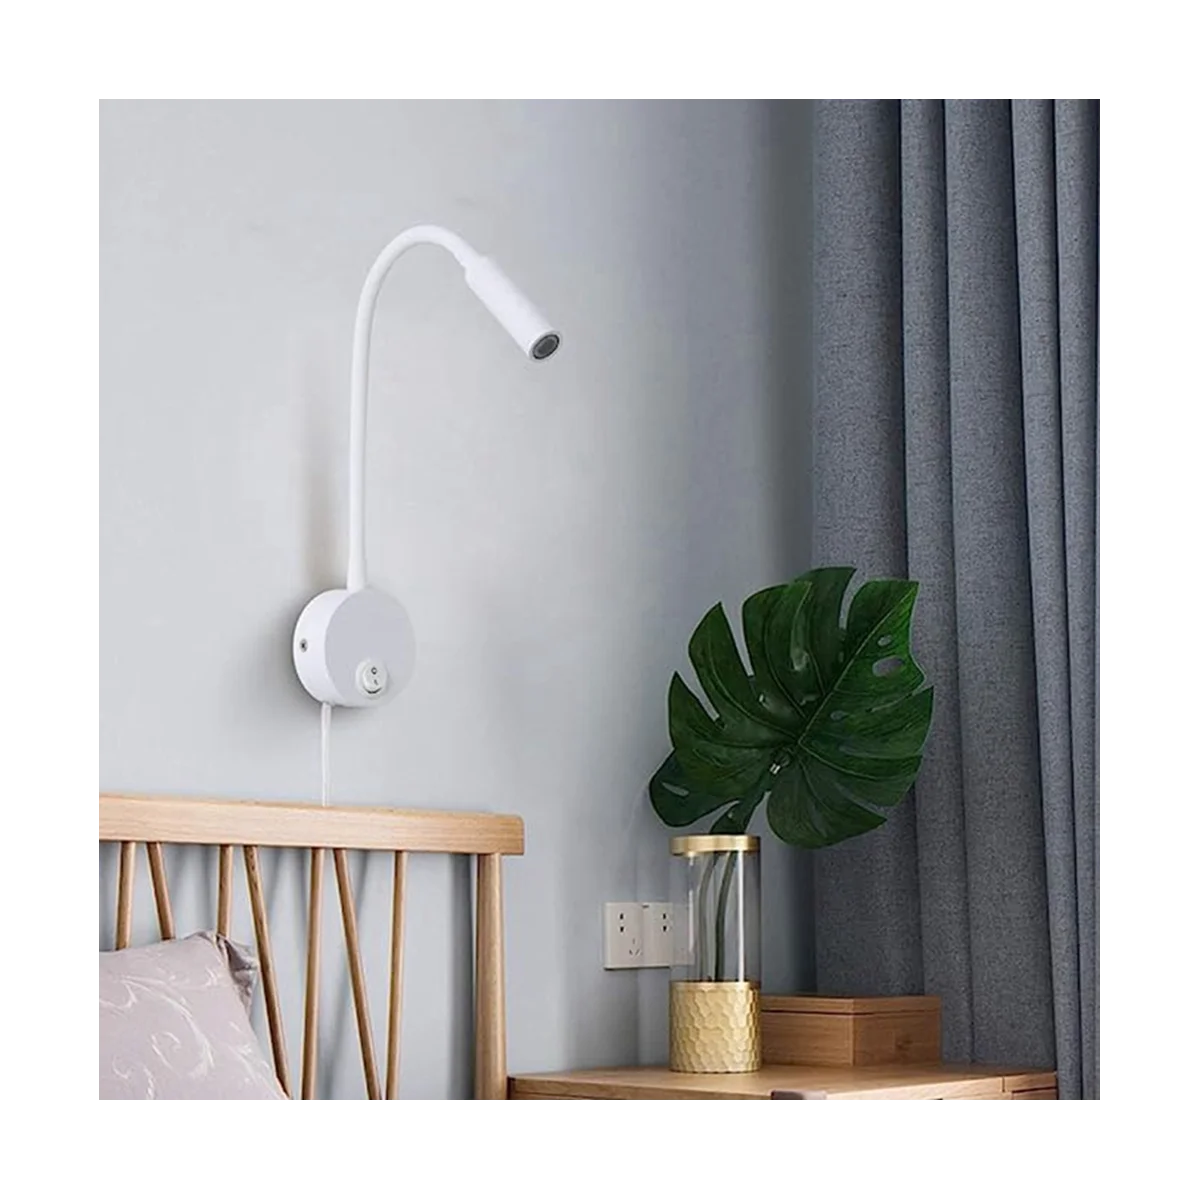 Настенная лампа для чтения, настенный светильник, шланг, прикроватная лампа, переключатель управления, настенный светильник в минималистском стиле (белая штепсельная вилка ЕС) 3